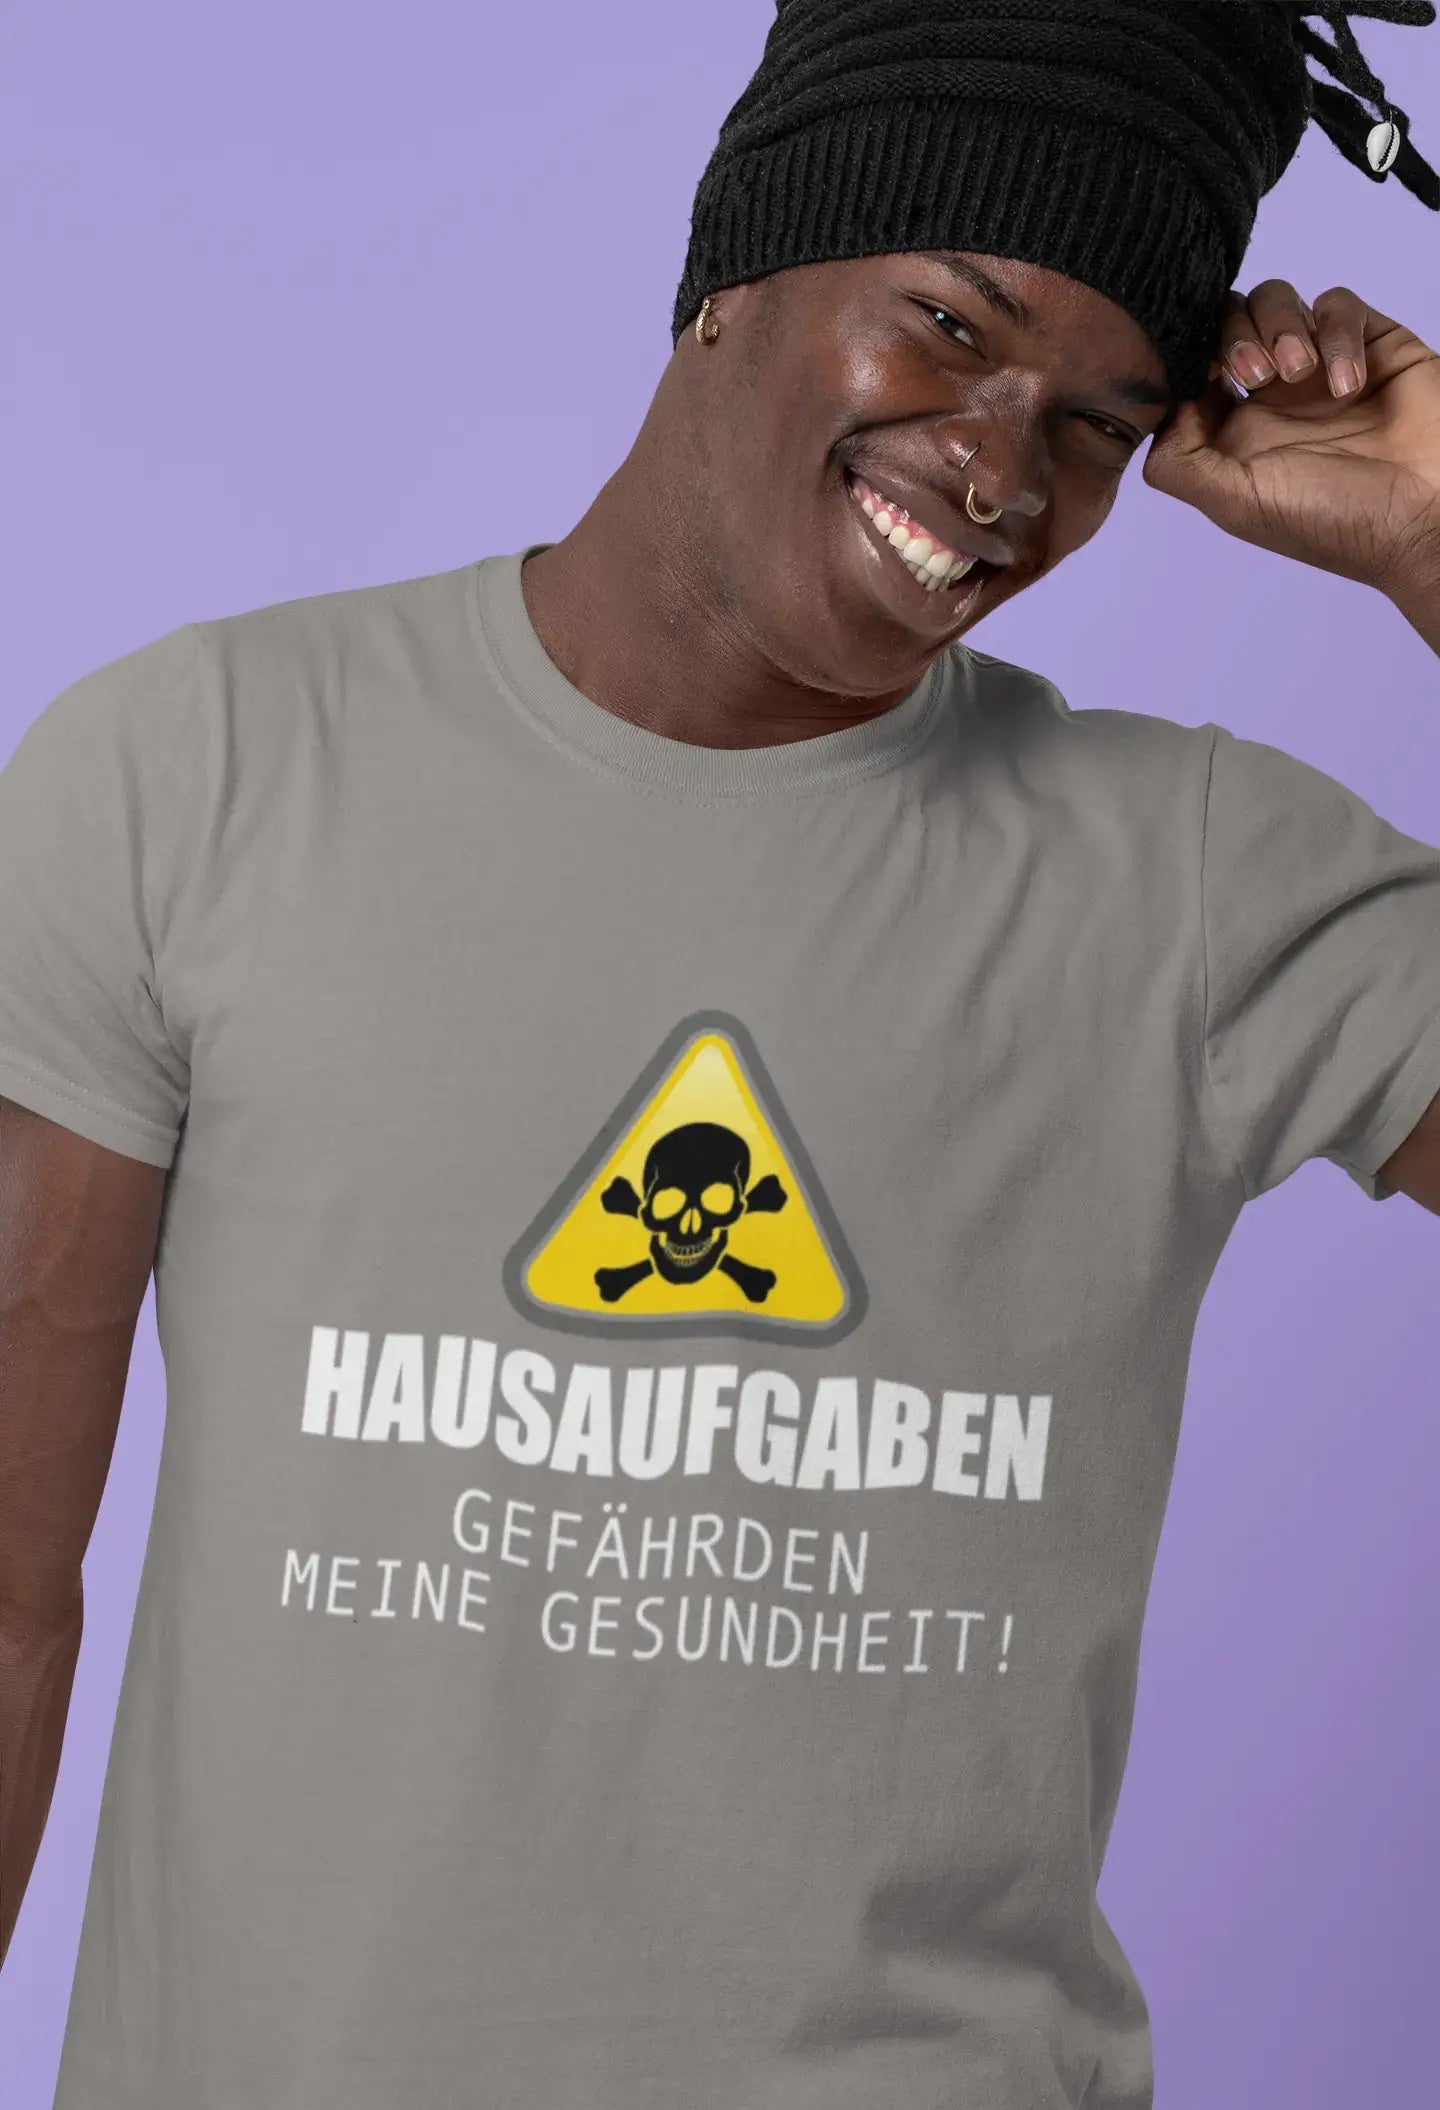 Men’s Graphic T-Shirt Hausaufgaben Gefährden Meine Gesundheit Military Green Gift Idea